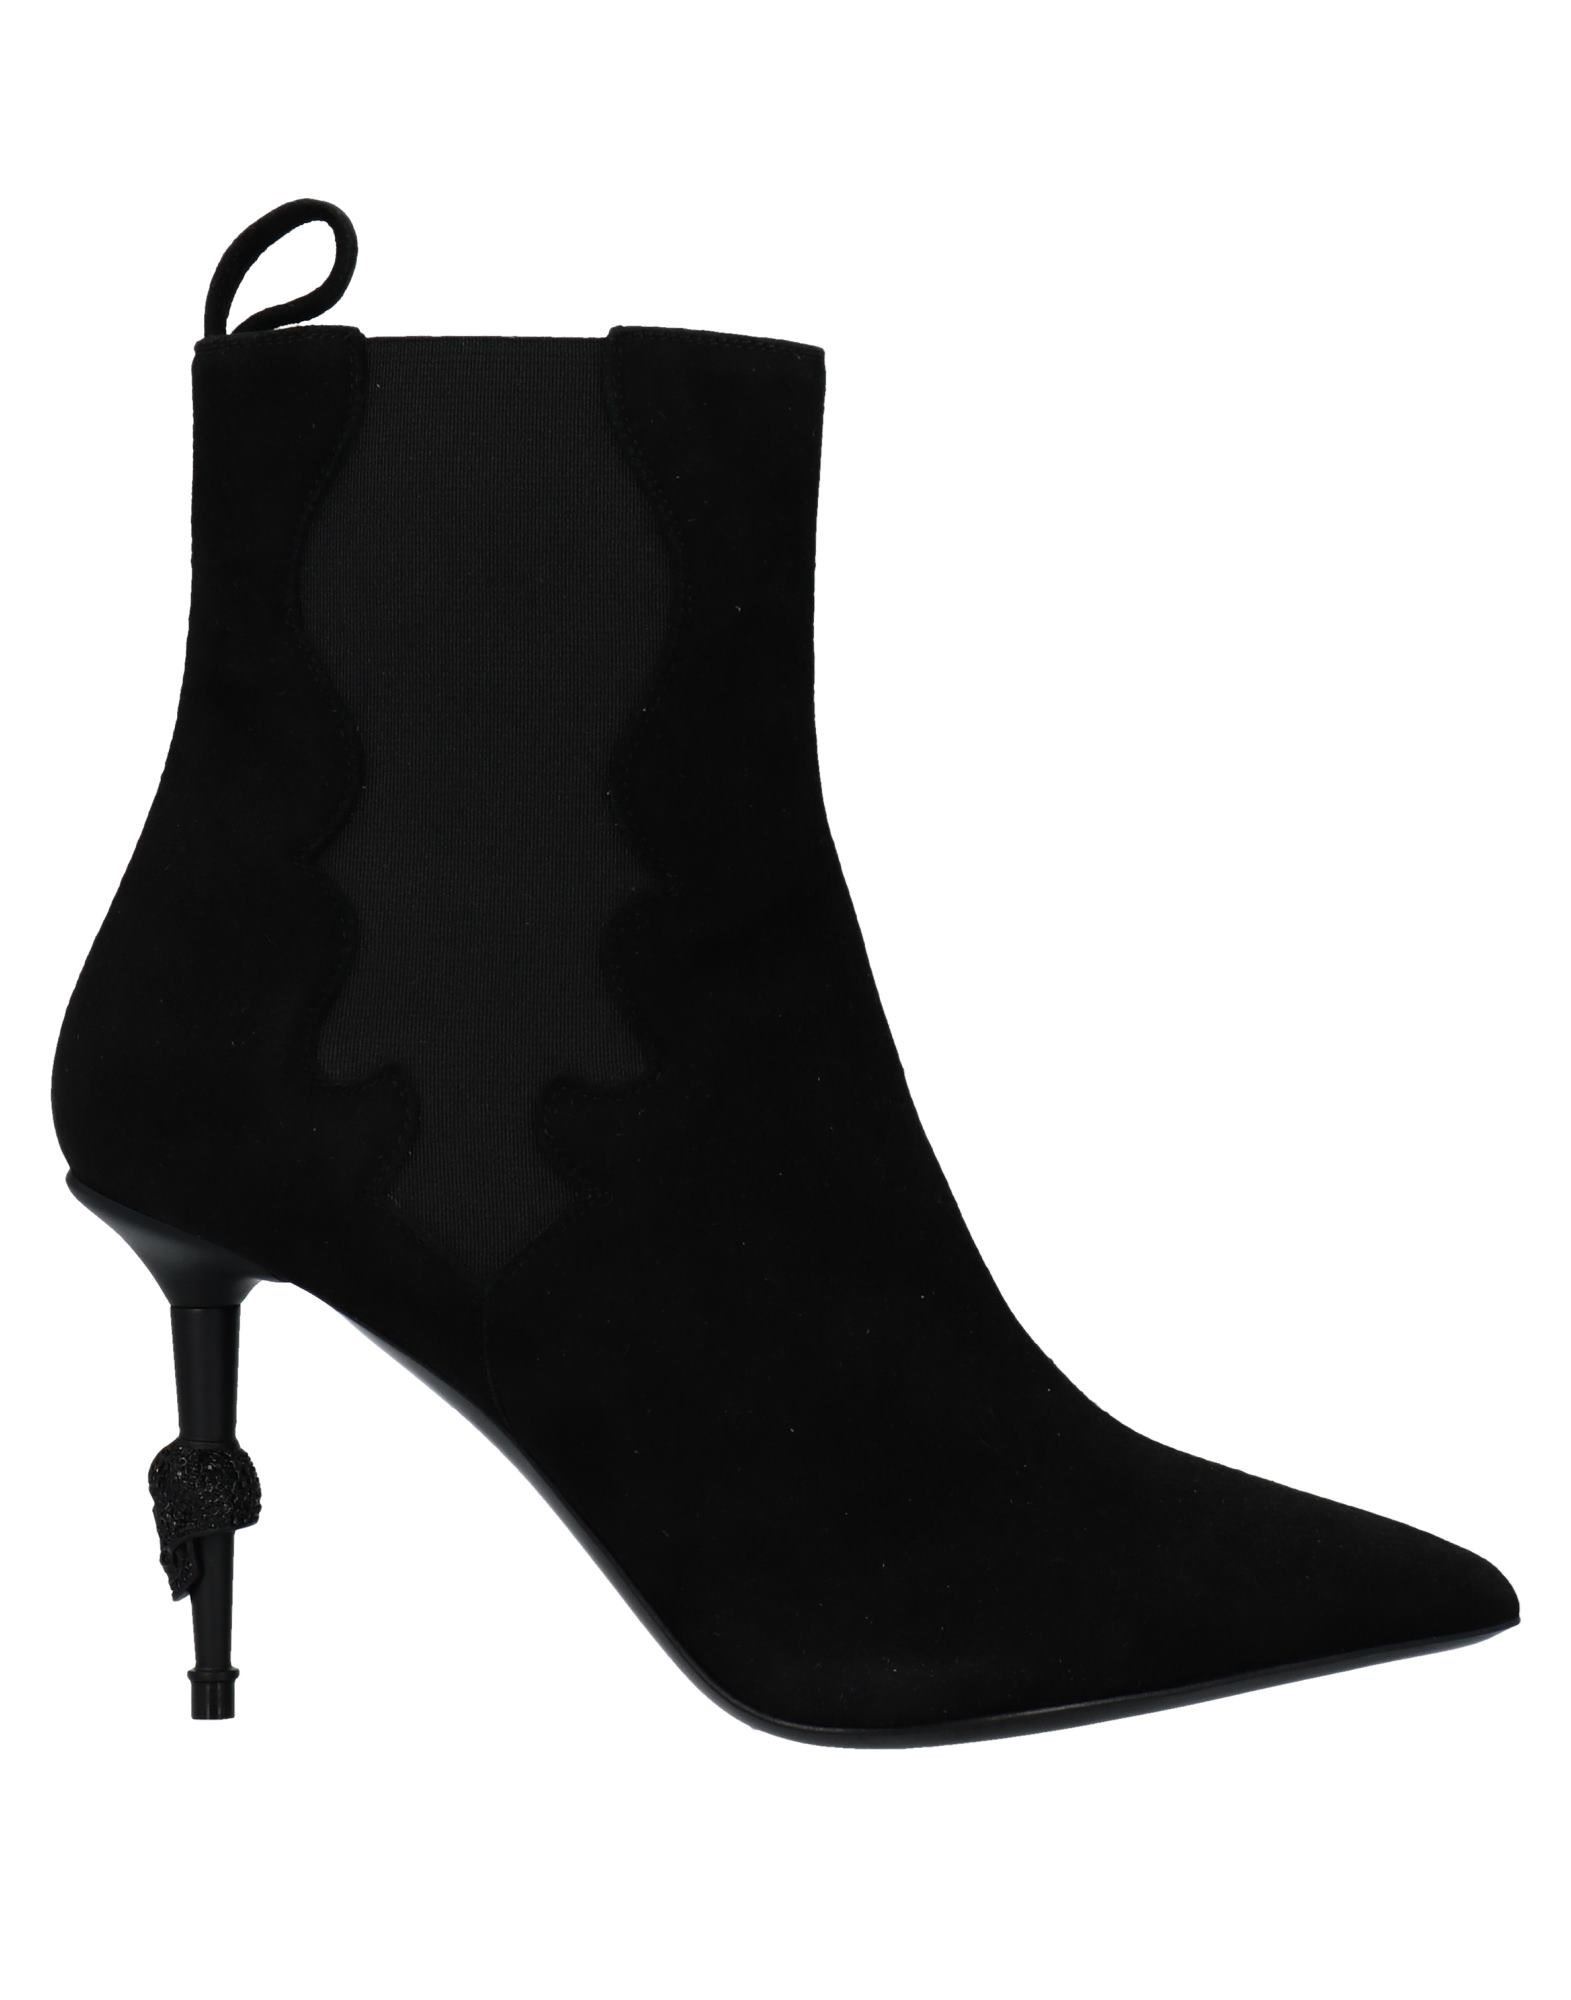 Shop Philipp Plein Woman Ankle Boots Black Size 7.5 Soft Leather